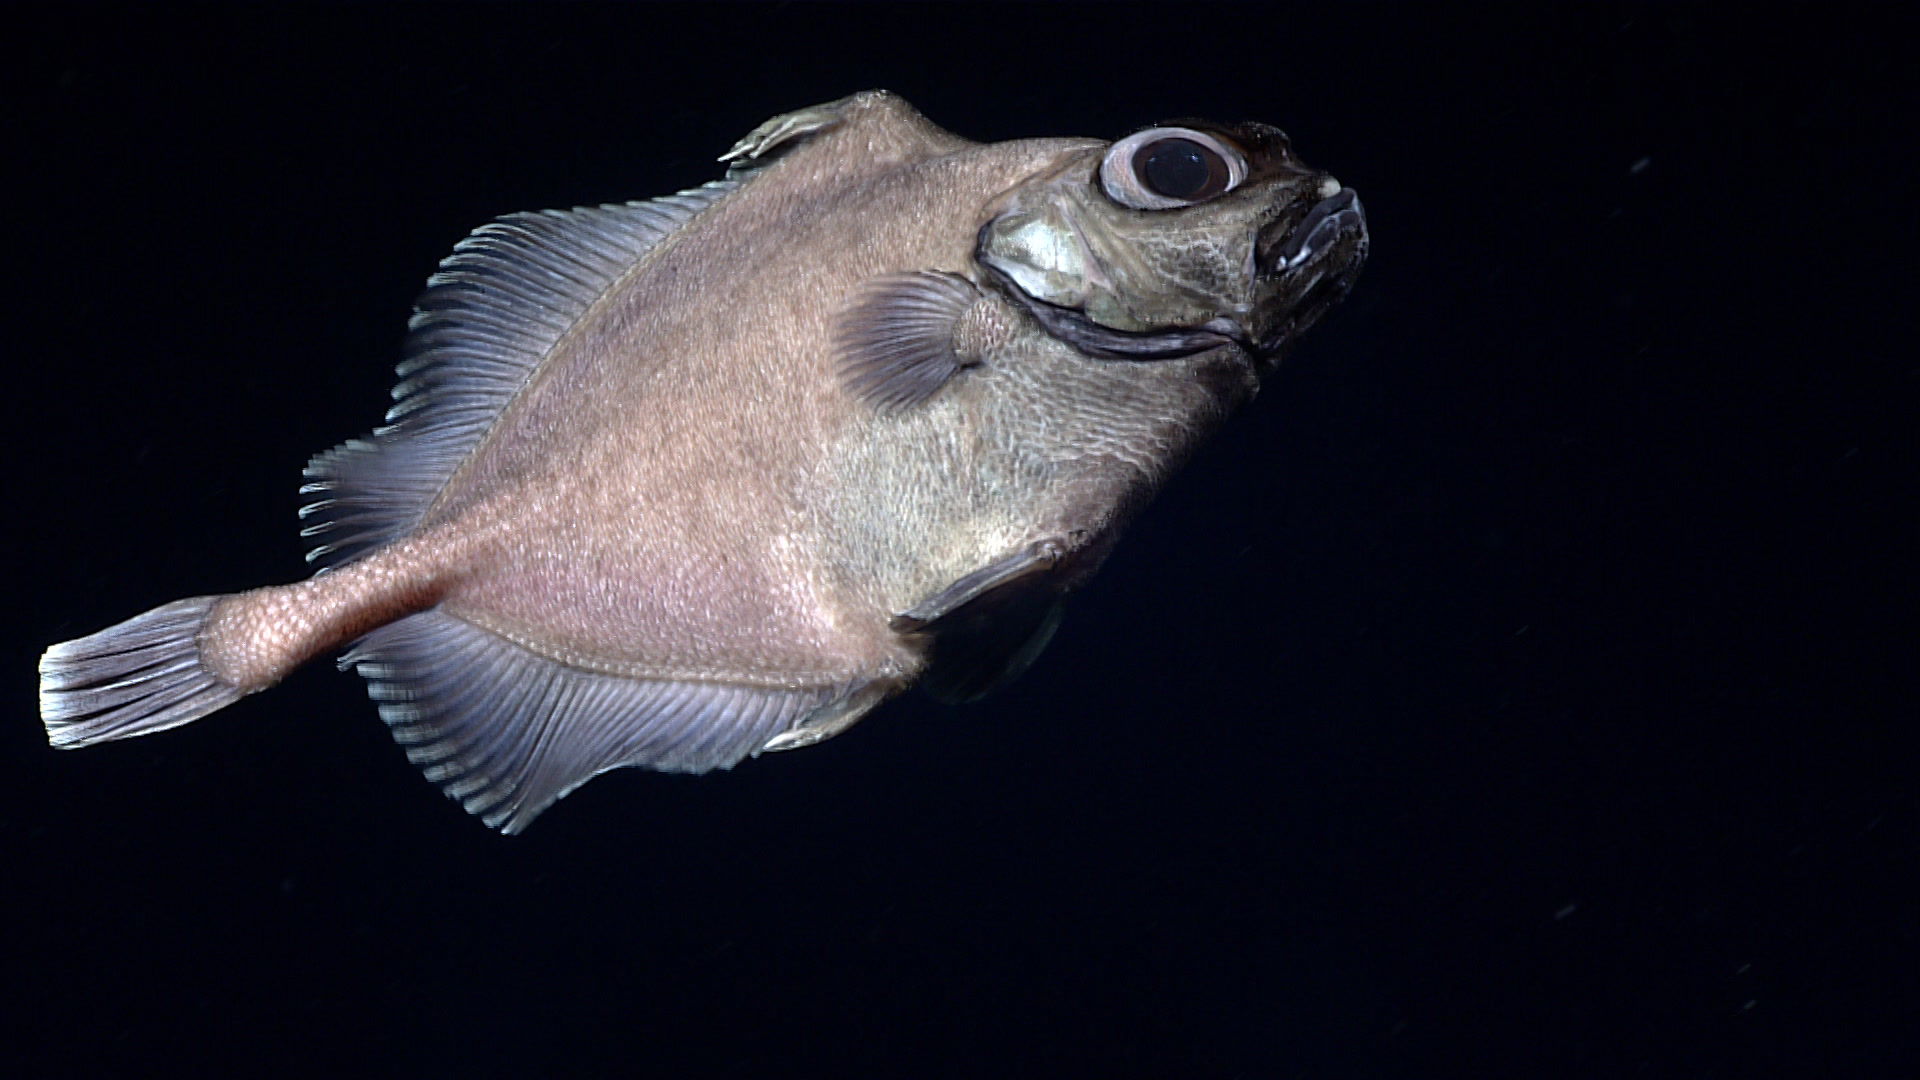 Επιστήμονες εντόπισαν ψάρι “oreo” στον Ατλαντικό Ωκεανό (video)